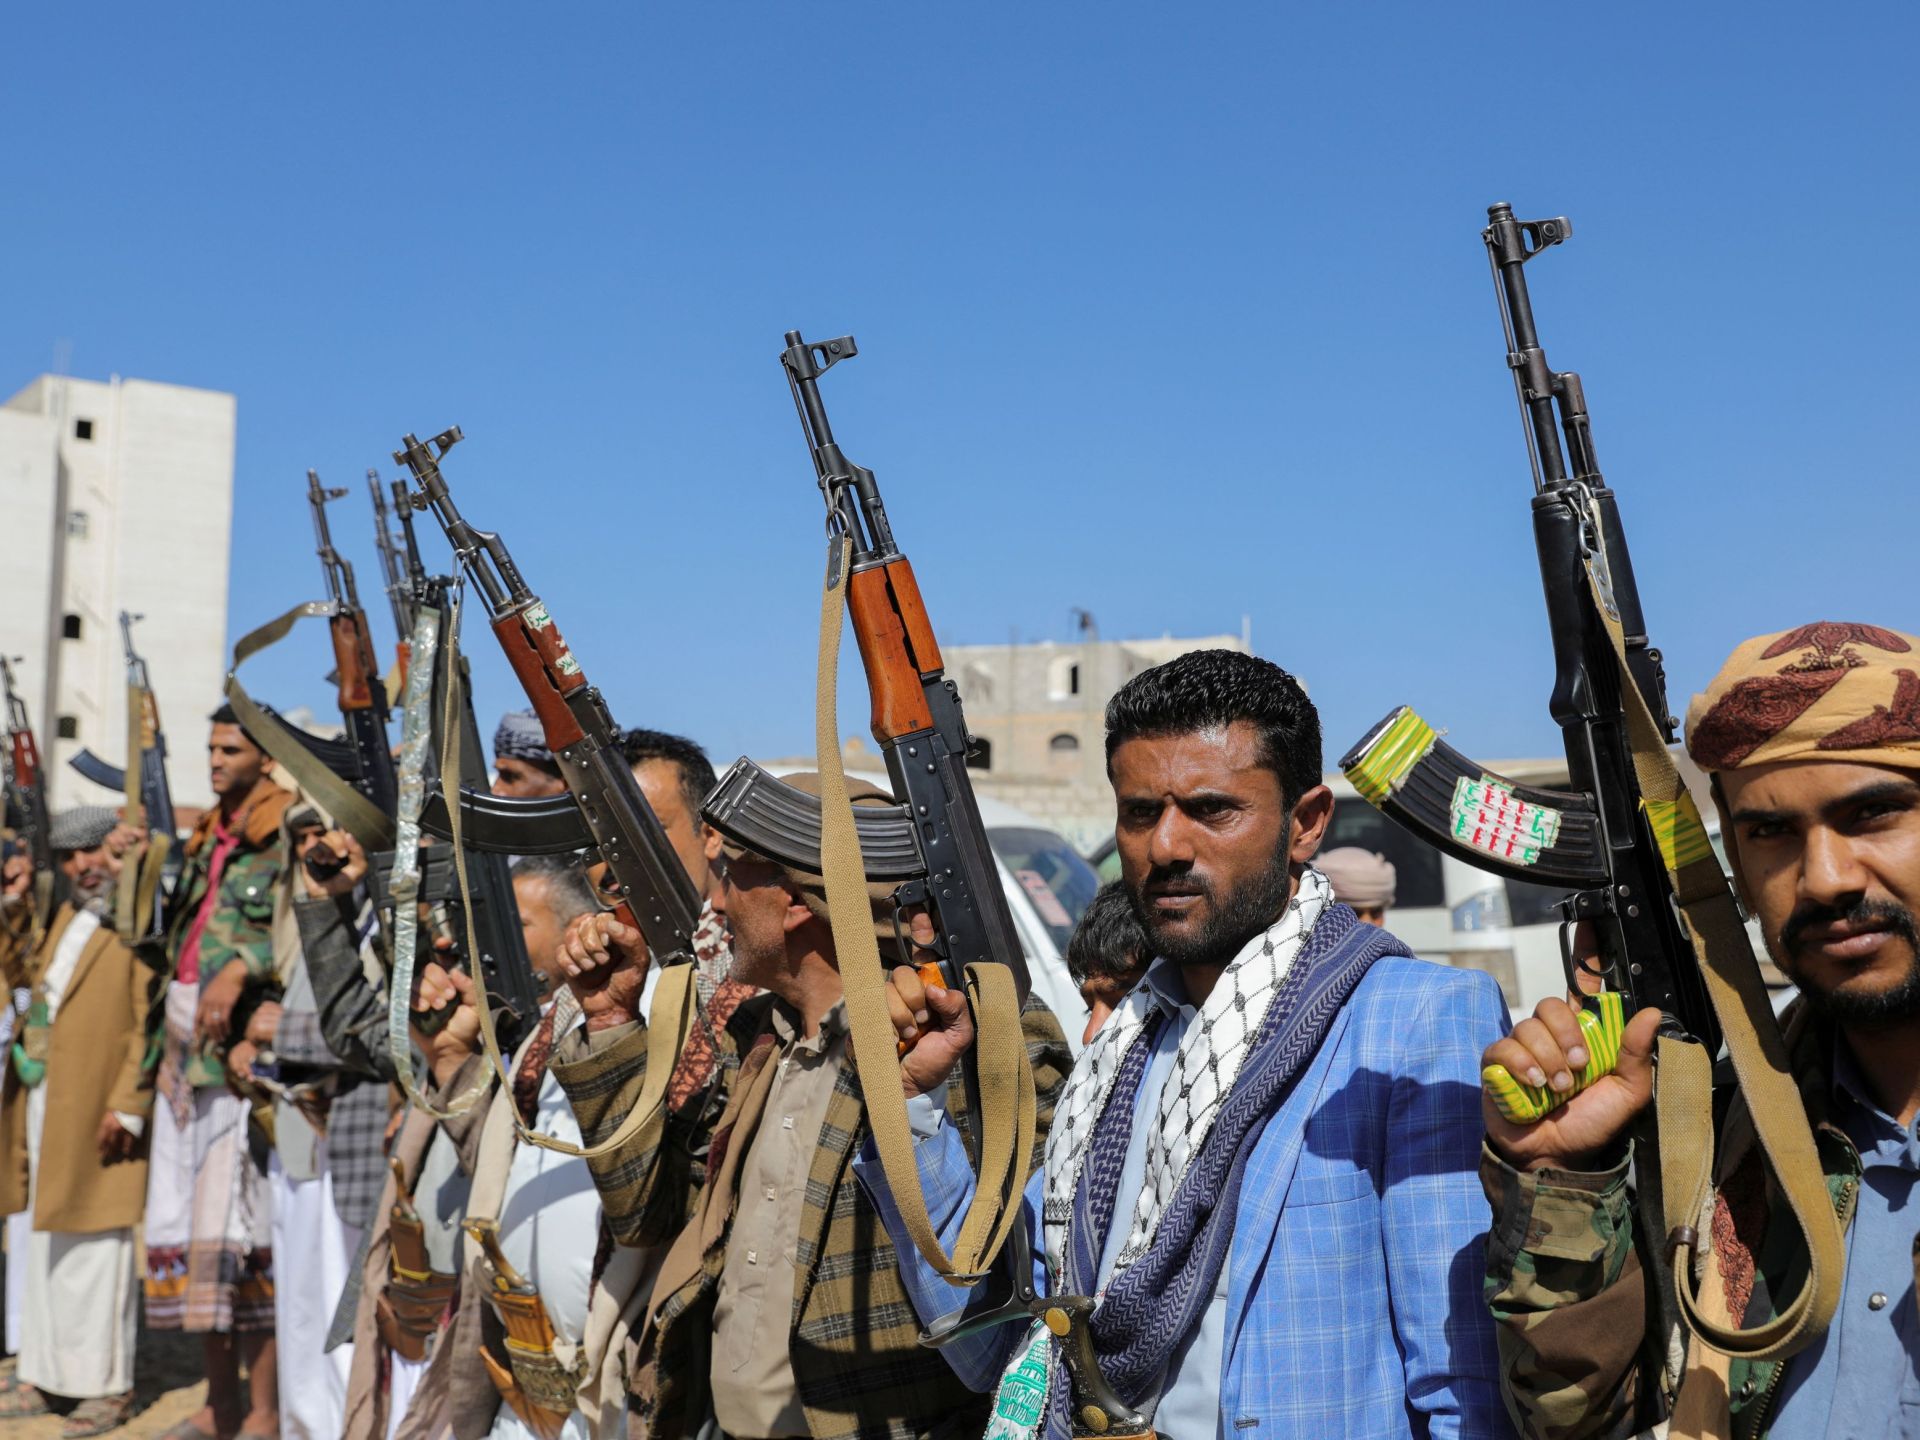 الحوثيون يتوعدون بالرد على أي “حماقة” أوروبية بالبحر الأحمر | أخبار – البوكس نيوز